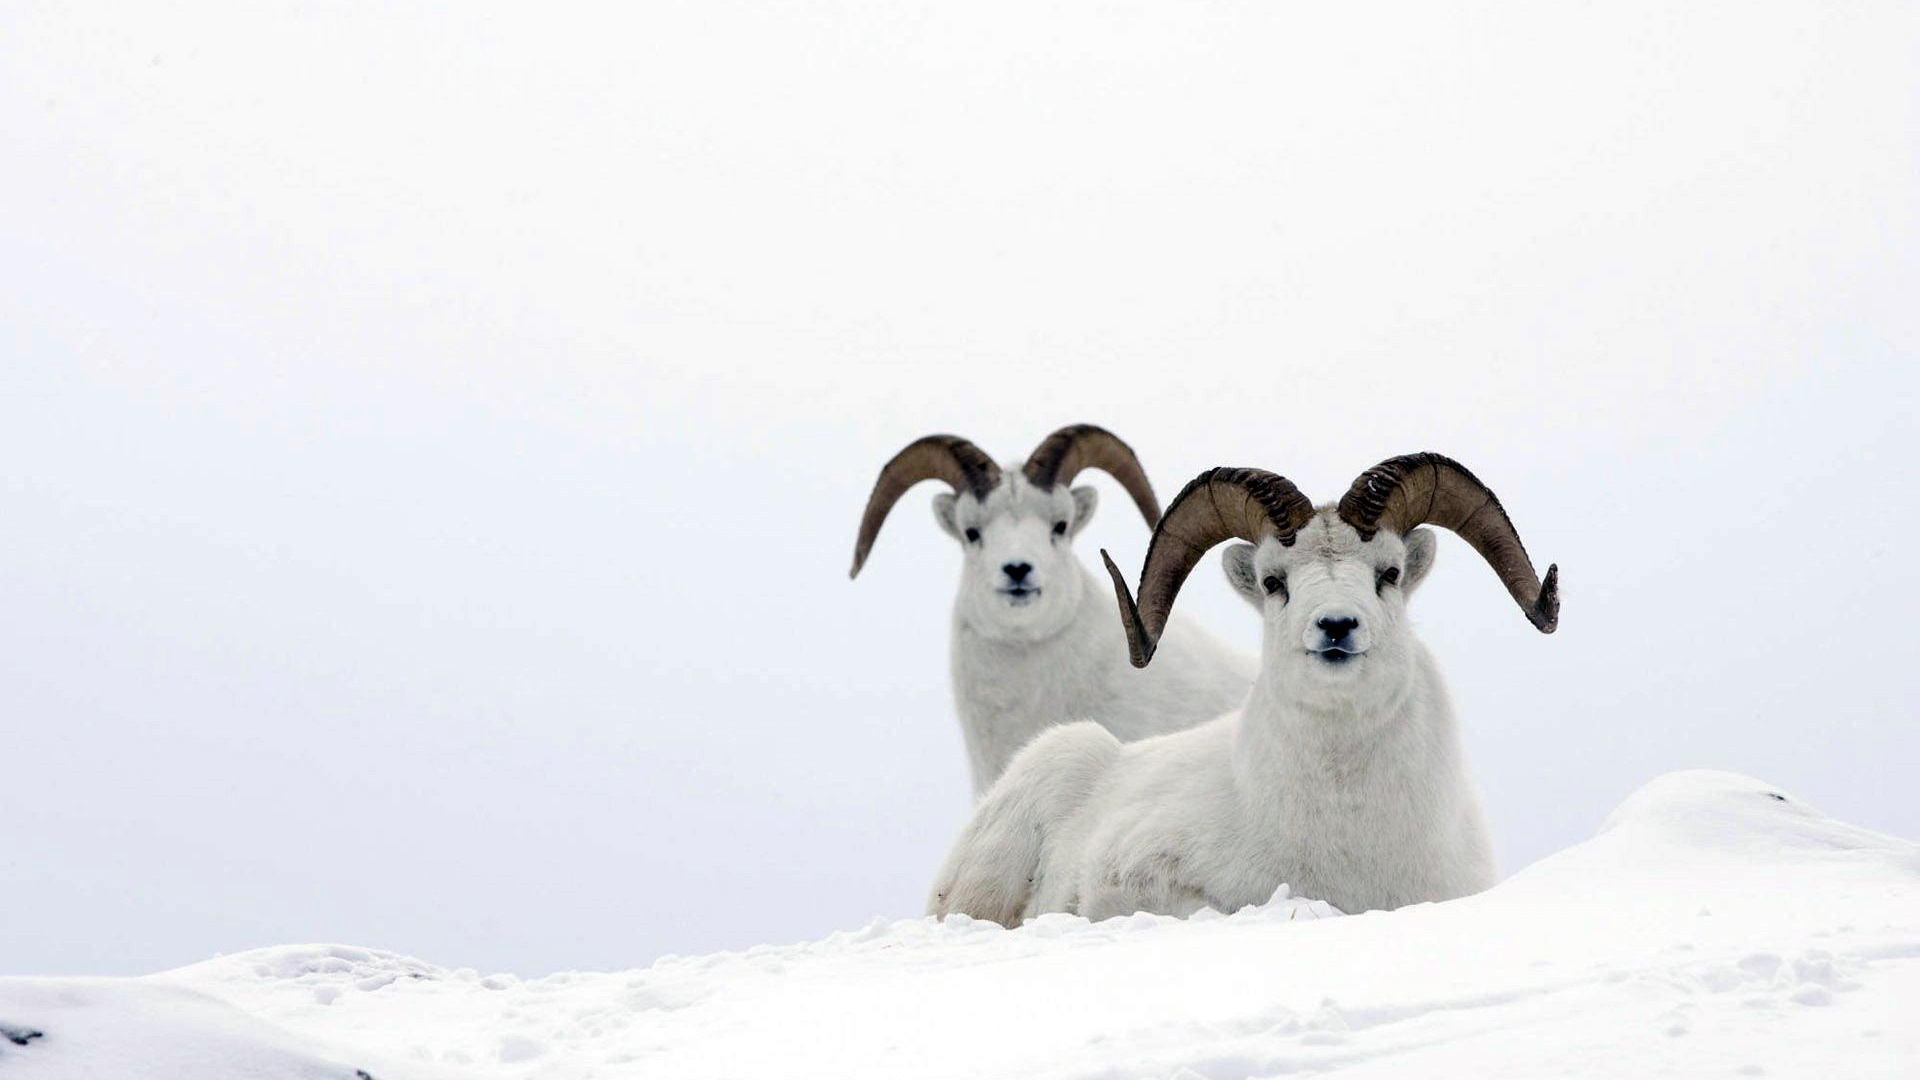 Drei Weiße Schafe Auf Schneebedecktem Boden Tagsüber. Wallpaper in 1920x1080 Resolution